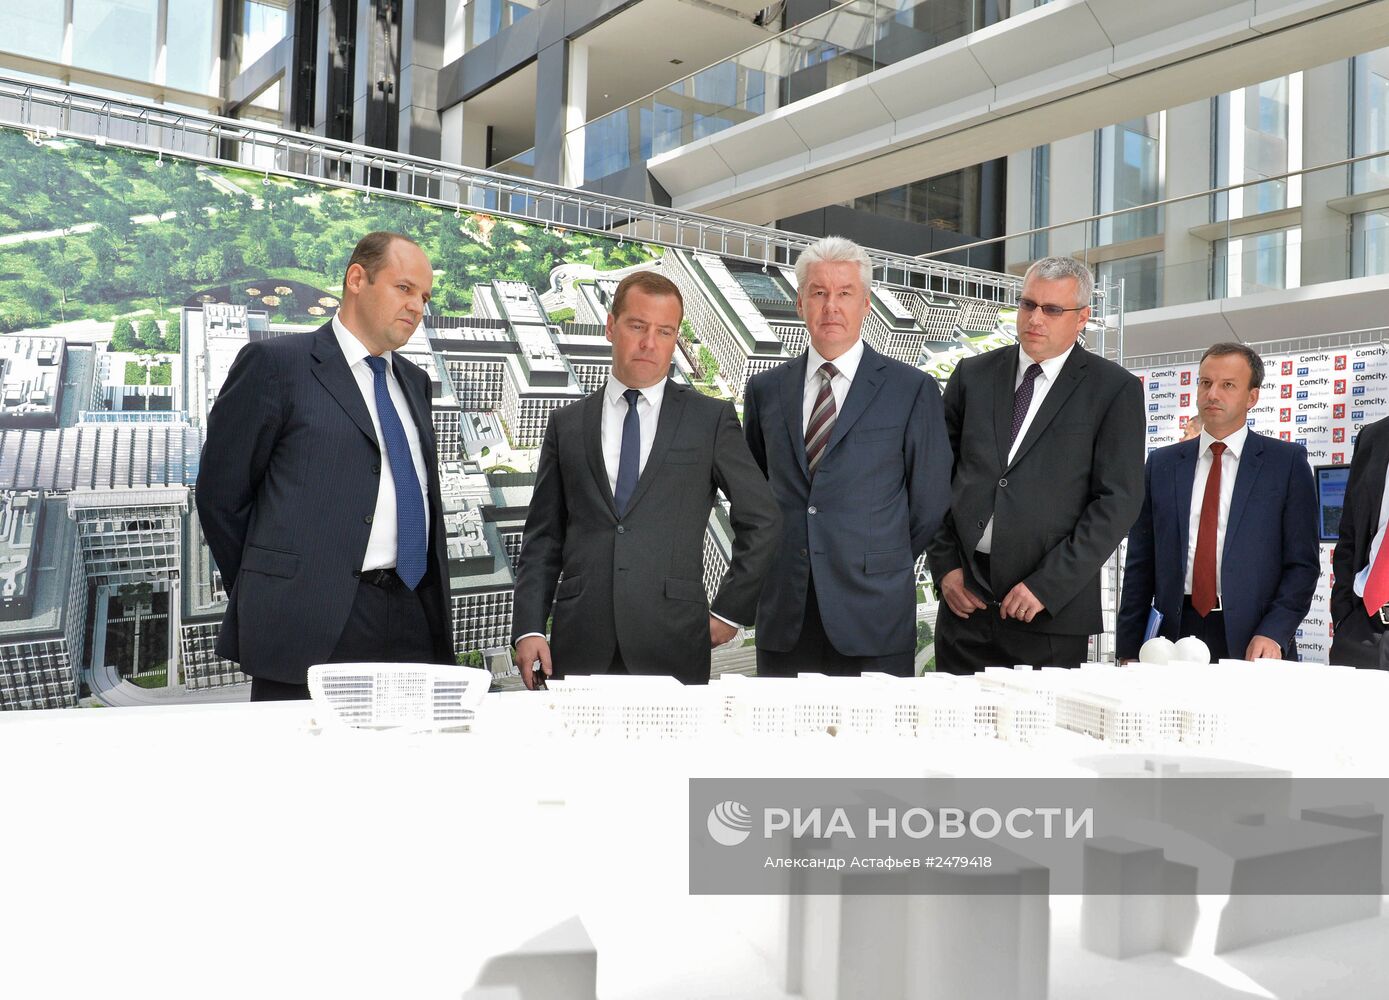 Д.Медведев посетил офисный парк Comcity на территории Новой Москвы